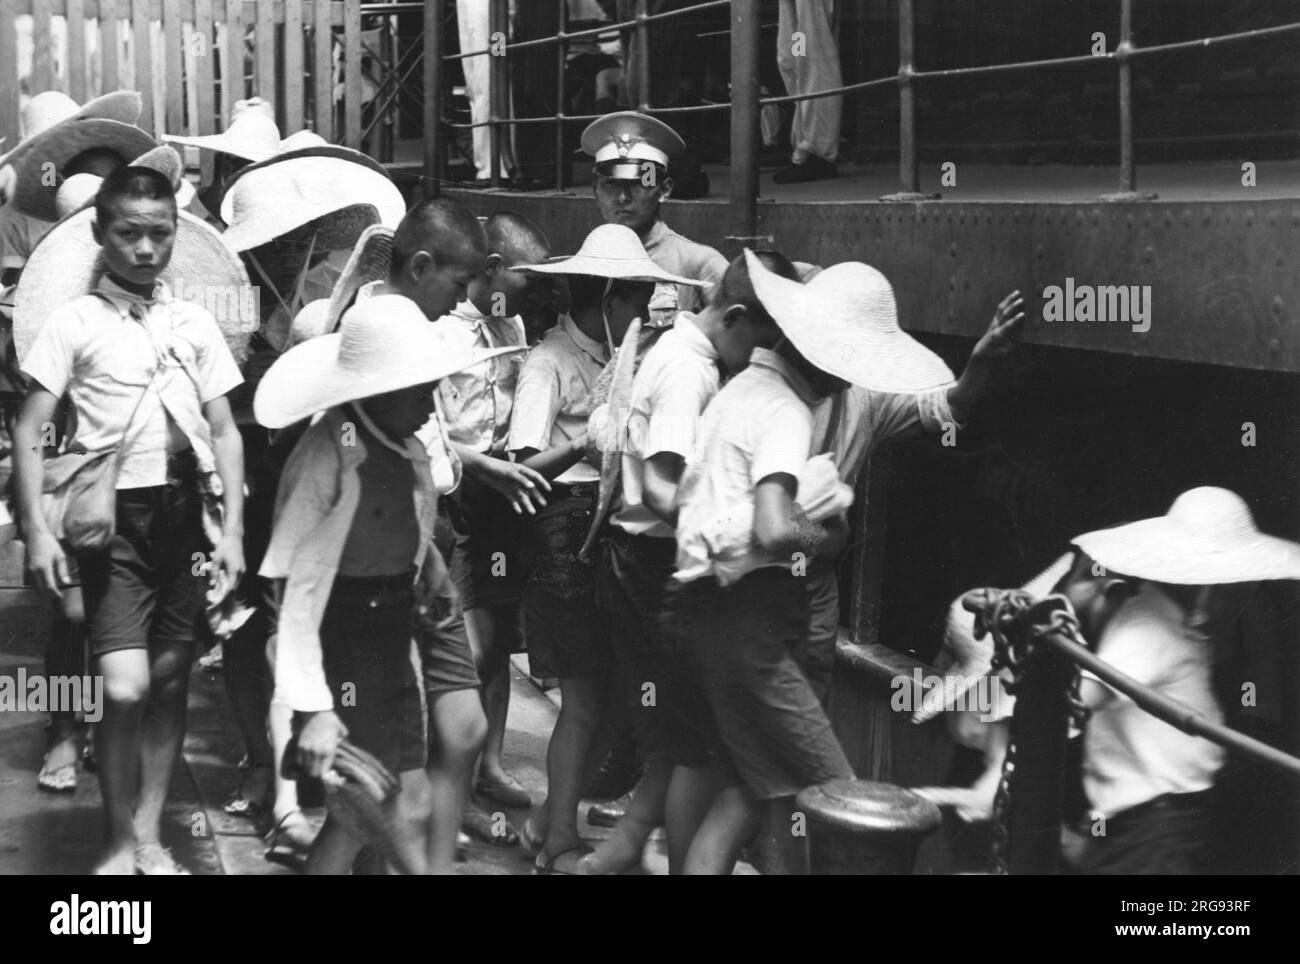 Kinder der chinesischen Stadt Hankou, Wuhan, werden mit dem Boot auf dem Jangtse evakuiert, während die Stadt während des chinesisch-japanischen Krieges von japanischen Truppen angegriffen wird Stockfoto